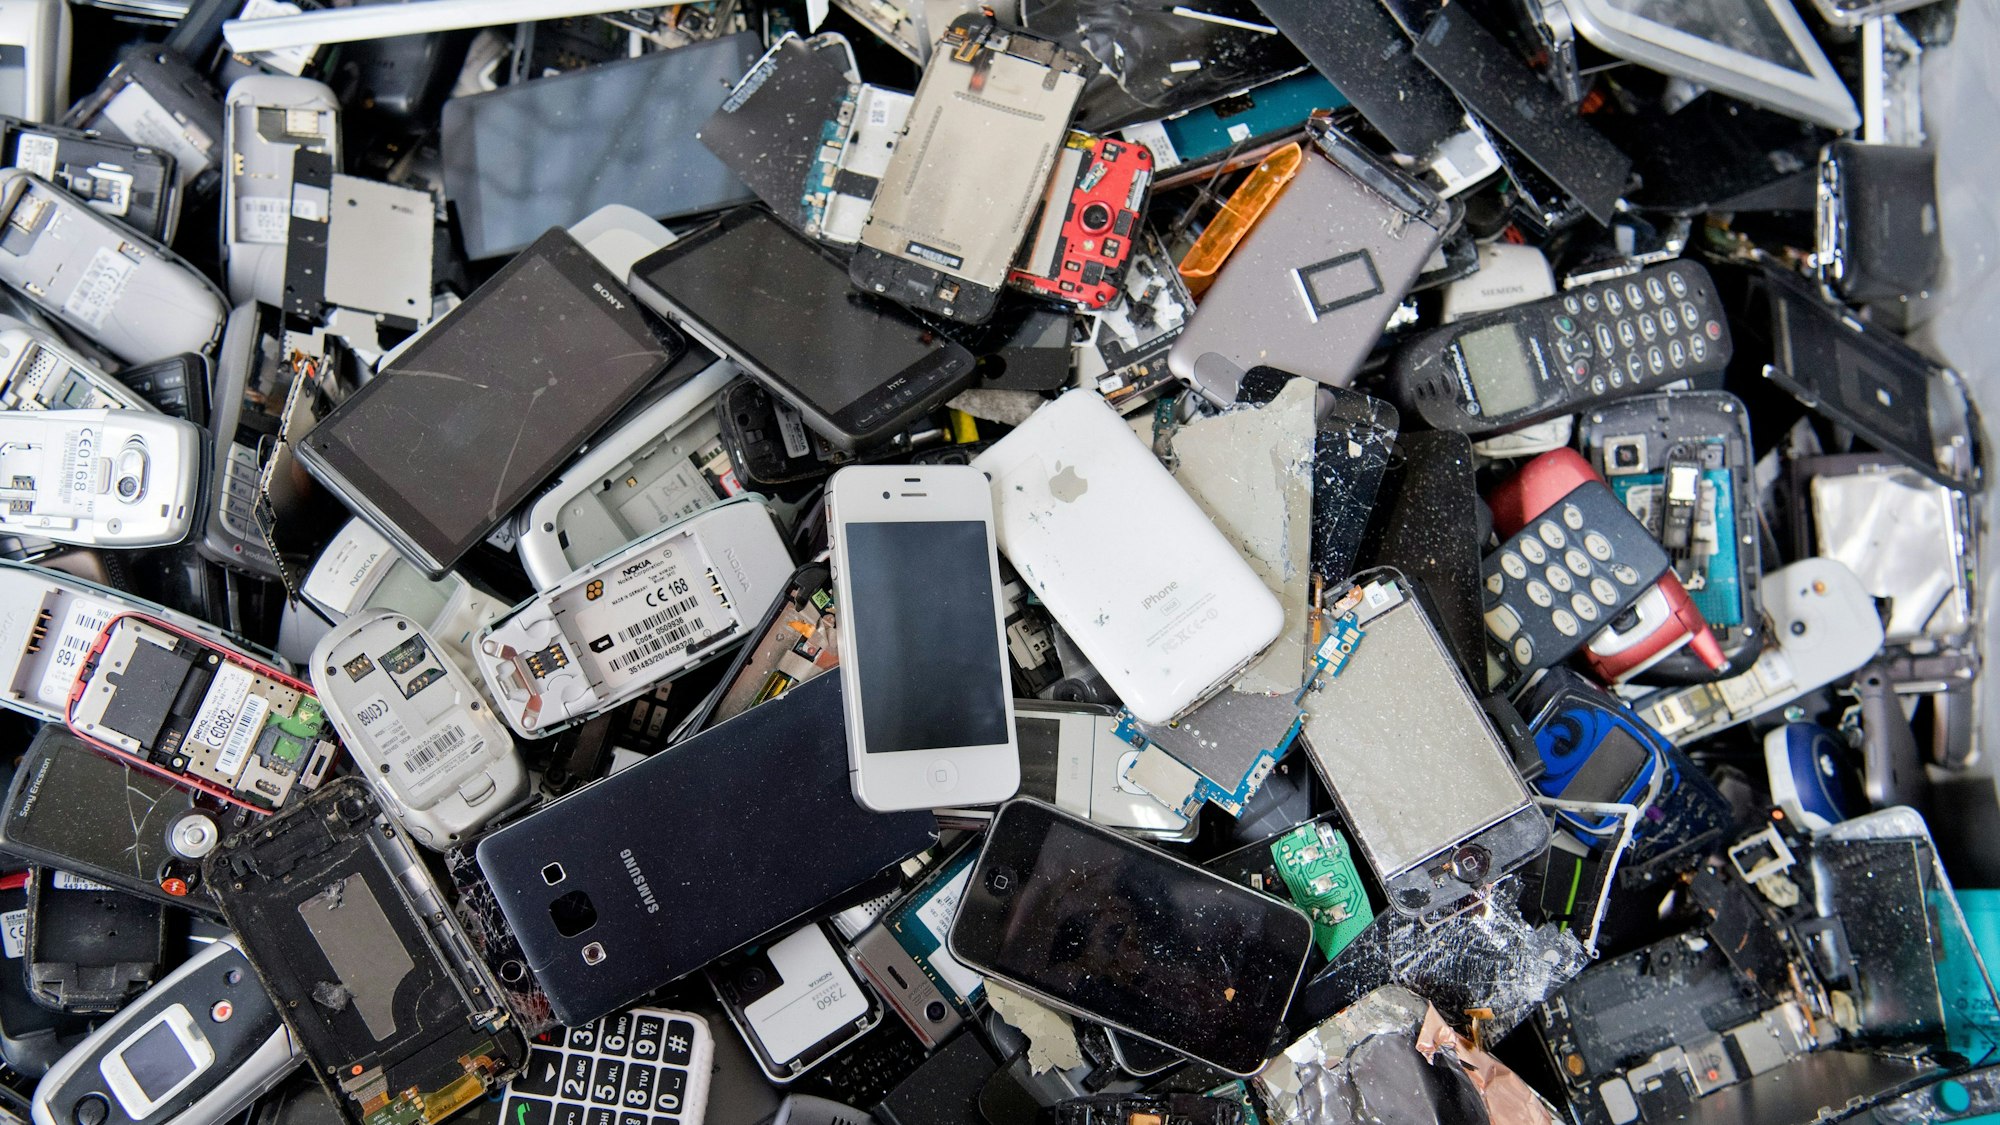 ARCHIV - 19.07.2016, Niedersachsen, Goslar: Alte Handys und Smartphones liegen in einem Container, ehe sie geschreddert werden.